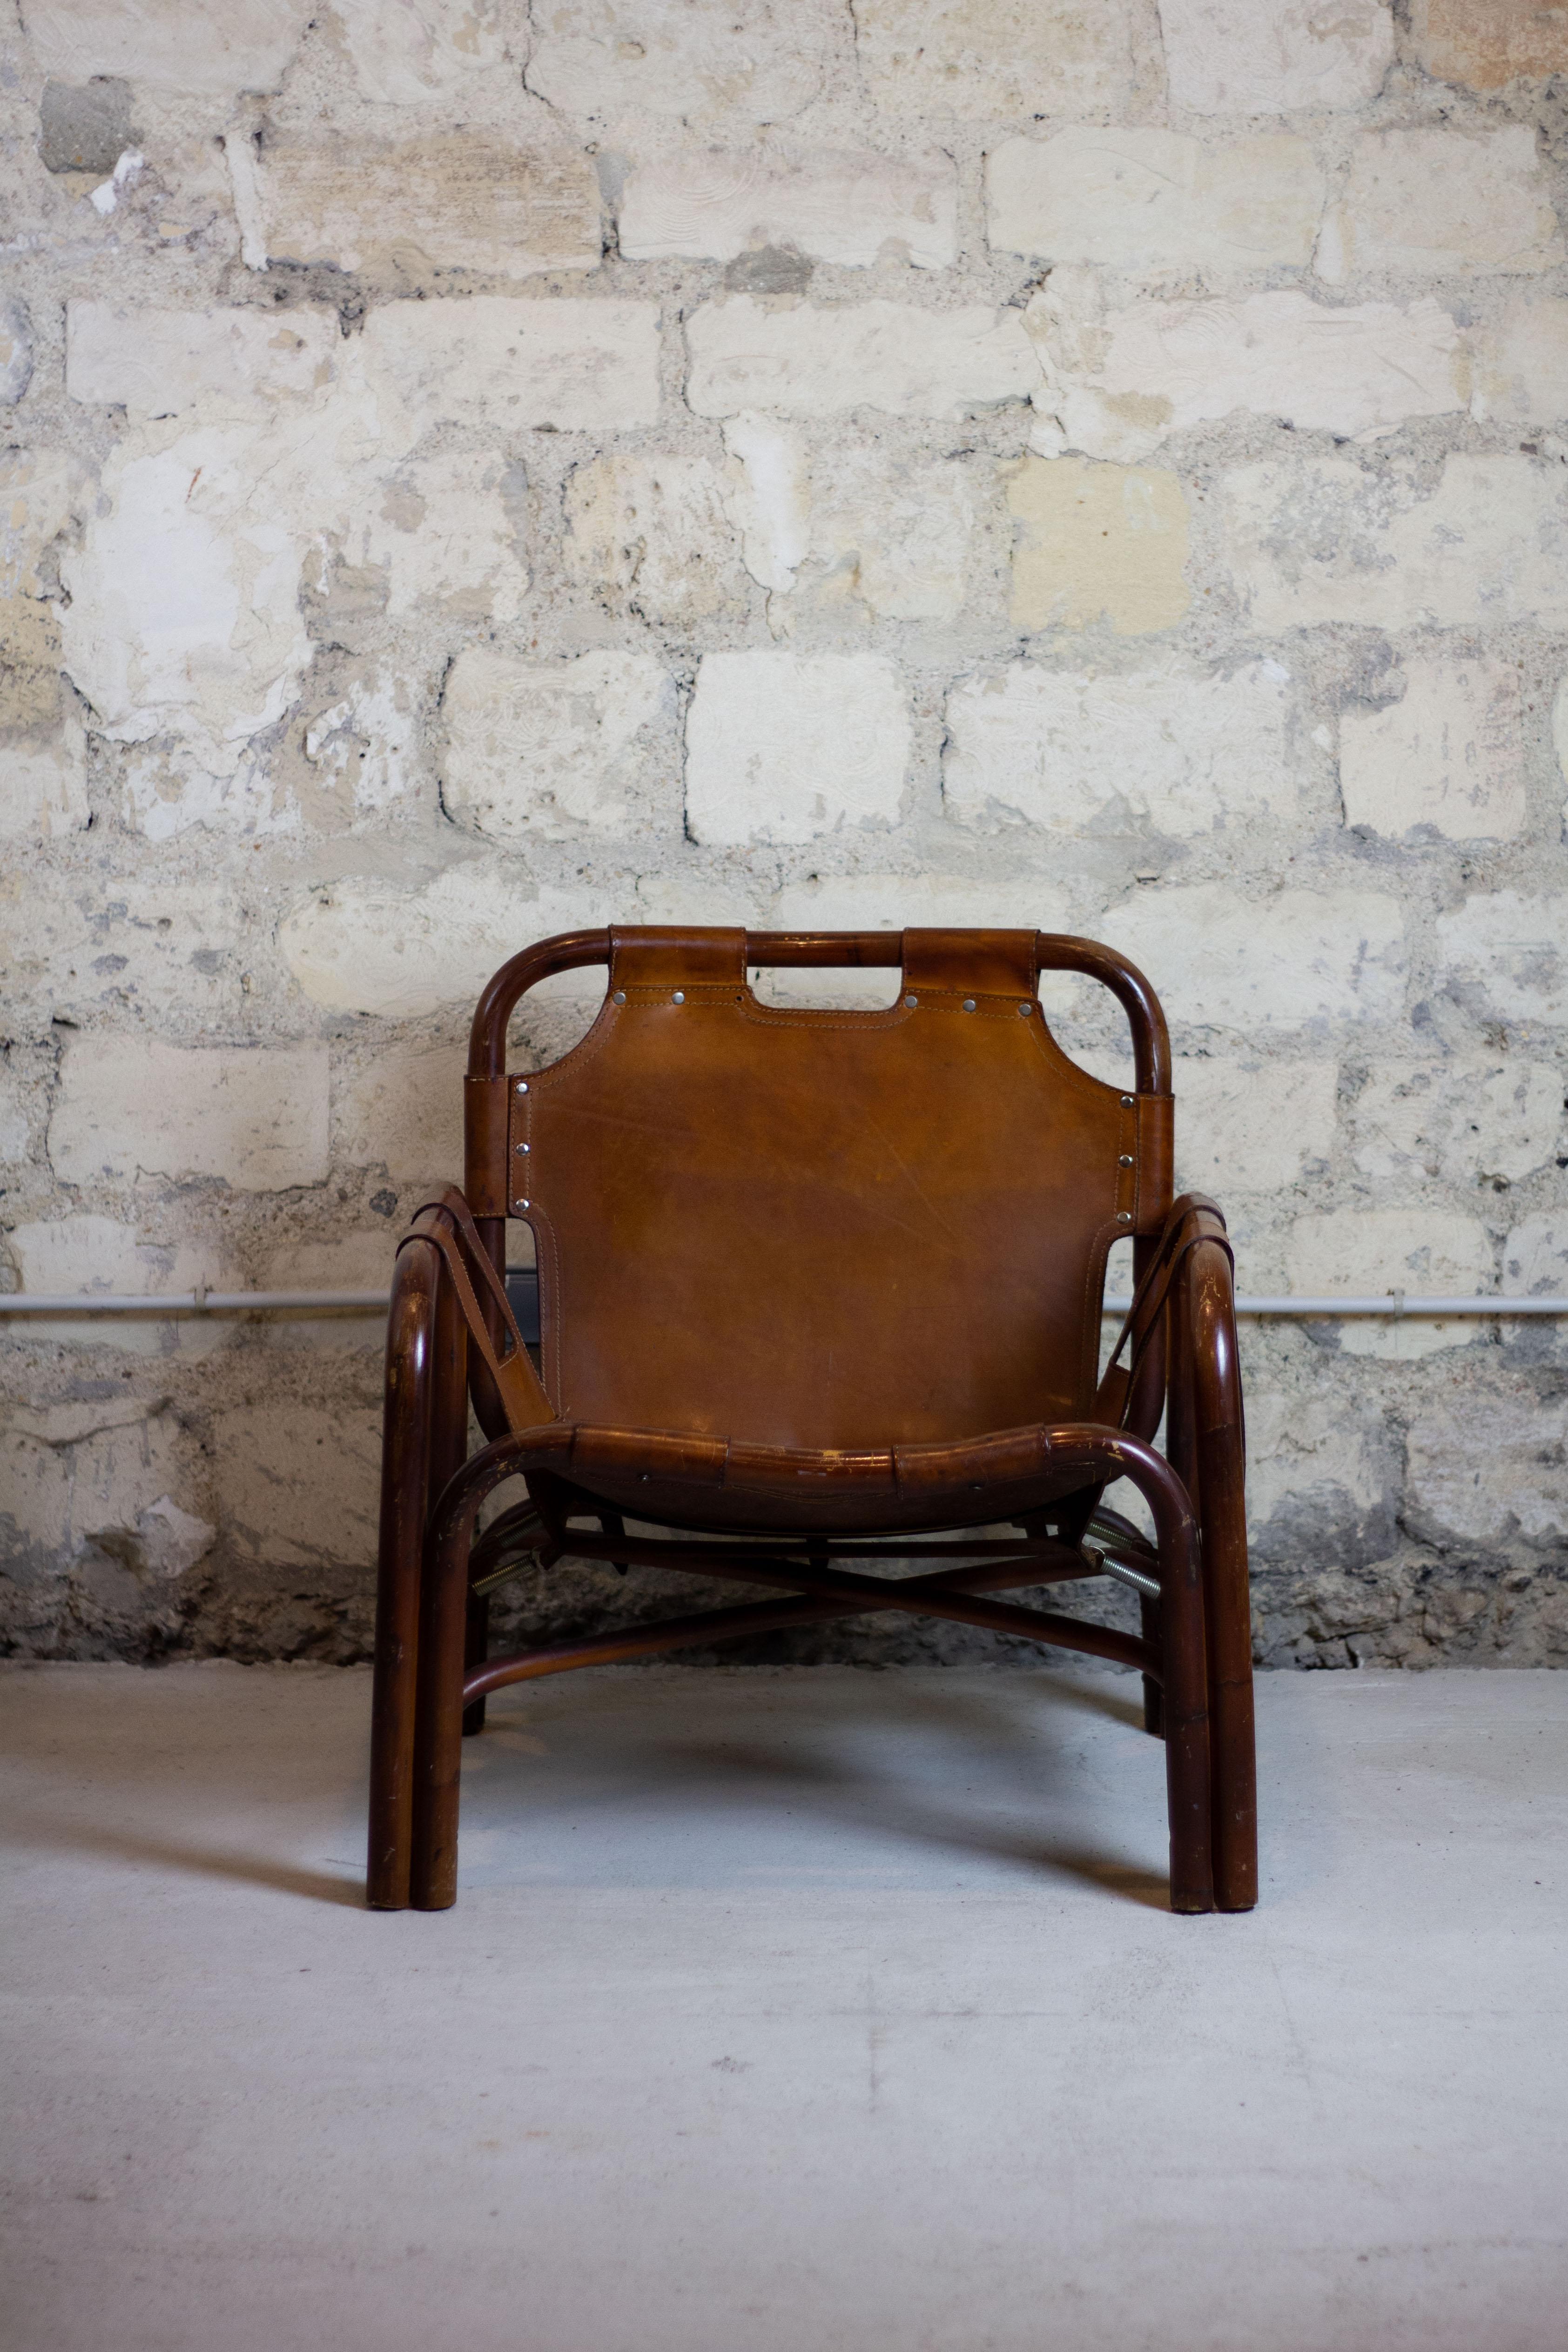 Le fauteuil safari vintage, conçu par le designer italien Tito Agnoli pour Bonacina dans les années 1960, dégage un sentiment d'aventure et une élégance intemporelle. Fabriqué à partir d'une combinaison de rotin et de cuir, ce fauteuil offre une